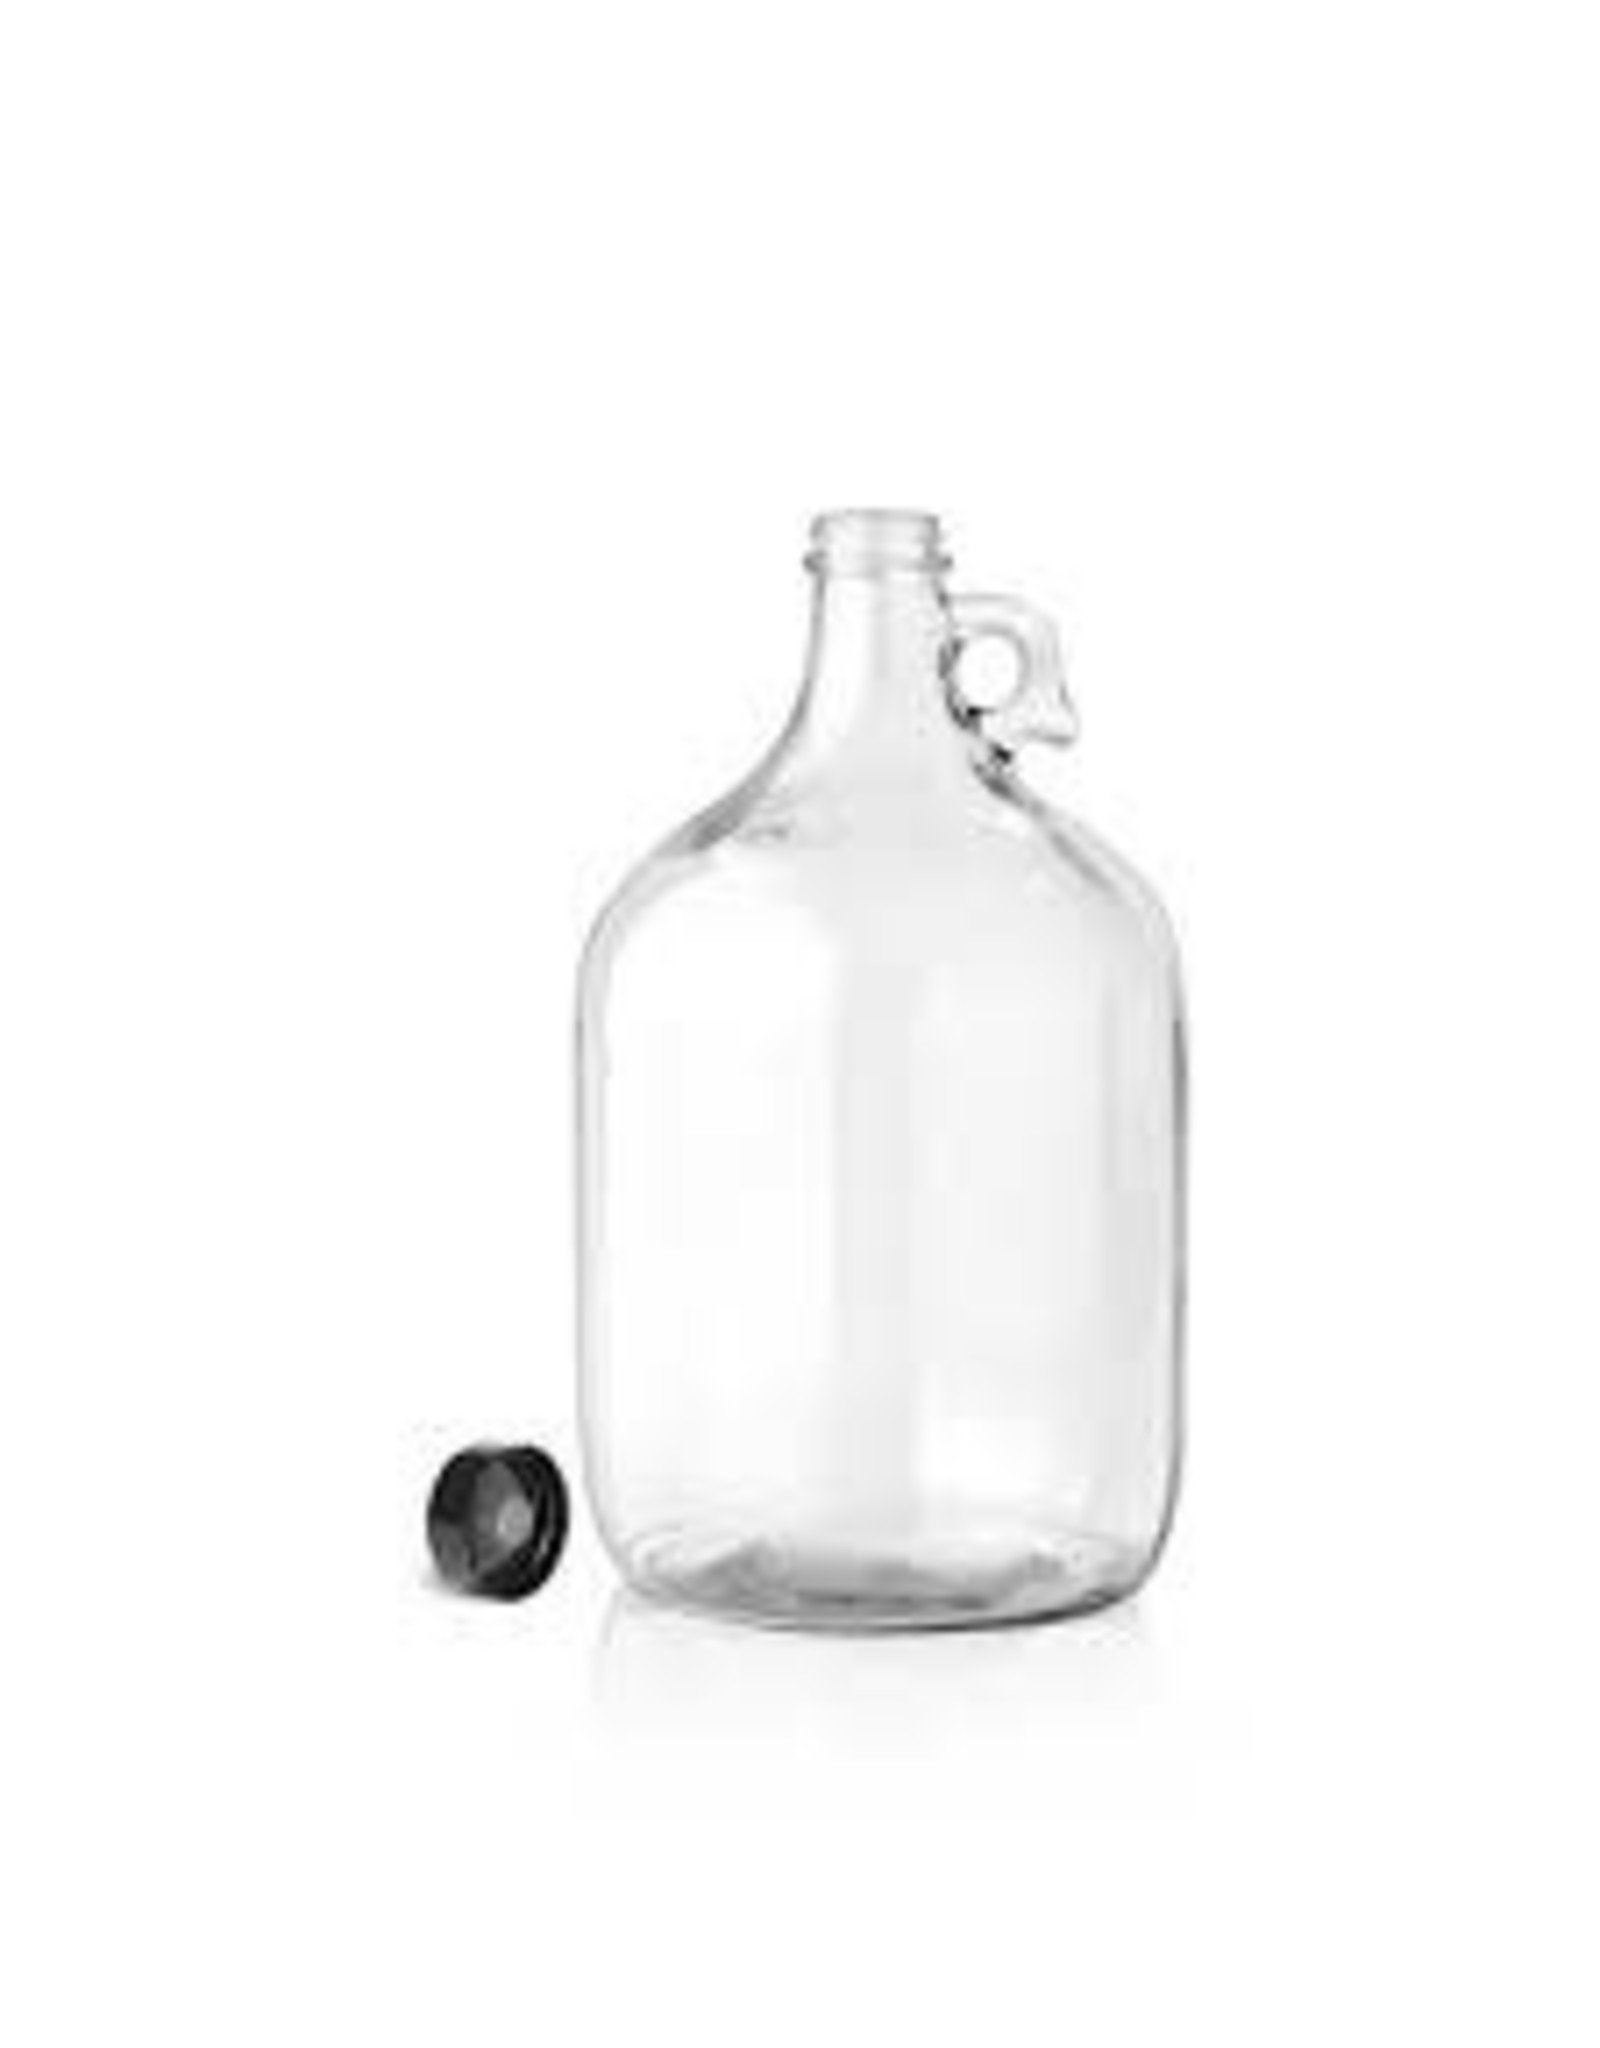 https://cdn.shoplightspeed.com/shops/642563/files/31017081/1600x2048x2/uline-glass-jugs-1-gallon.jpg